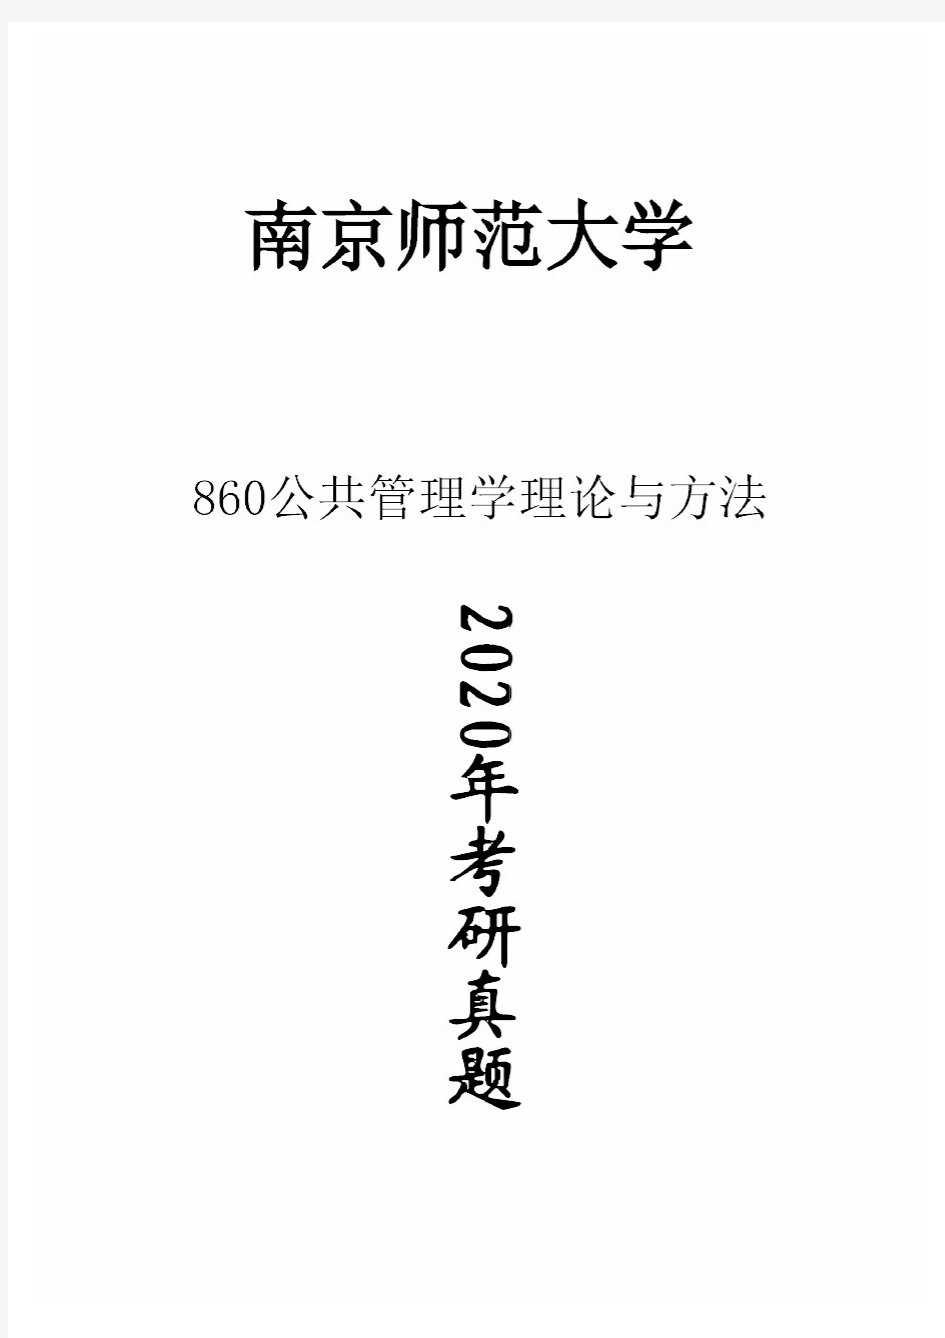 南京师范大学860公共管理学理论与方法2020年考研真题试卷试题